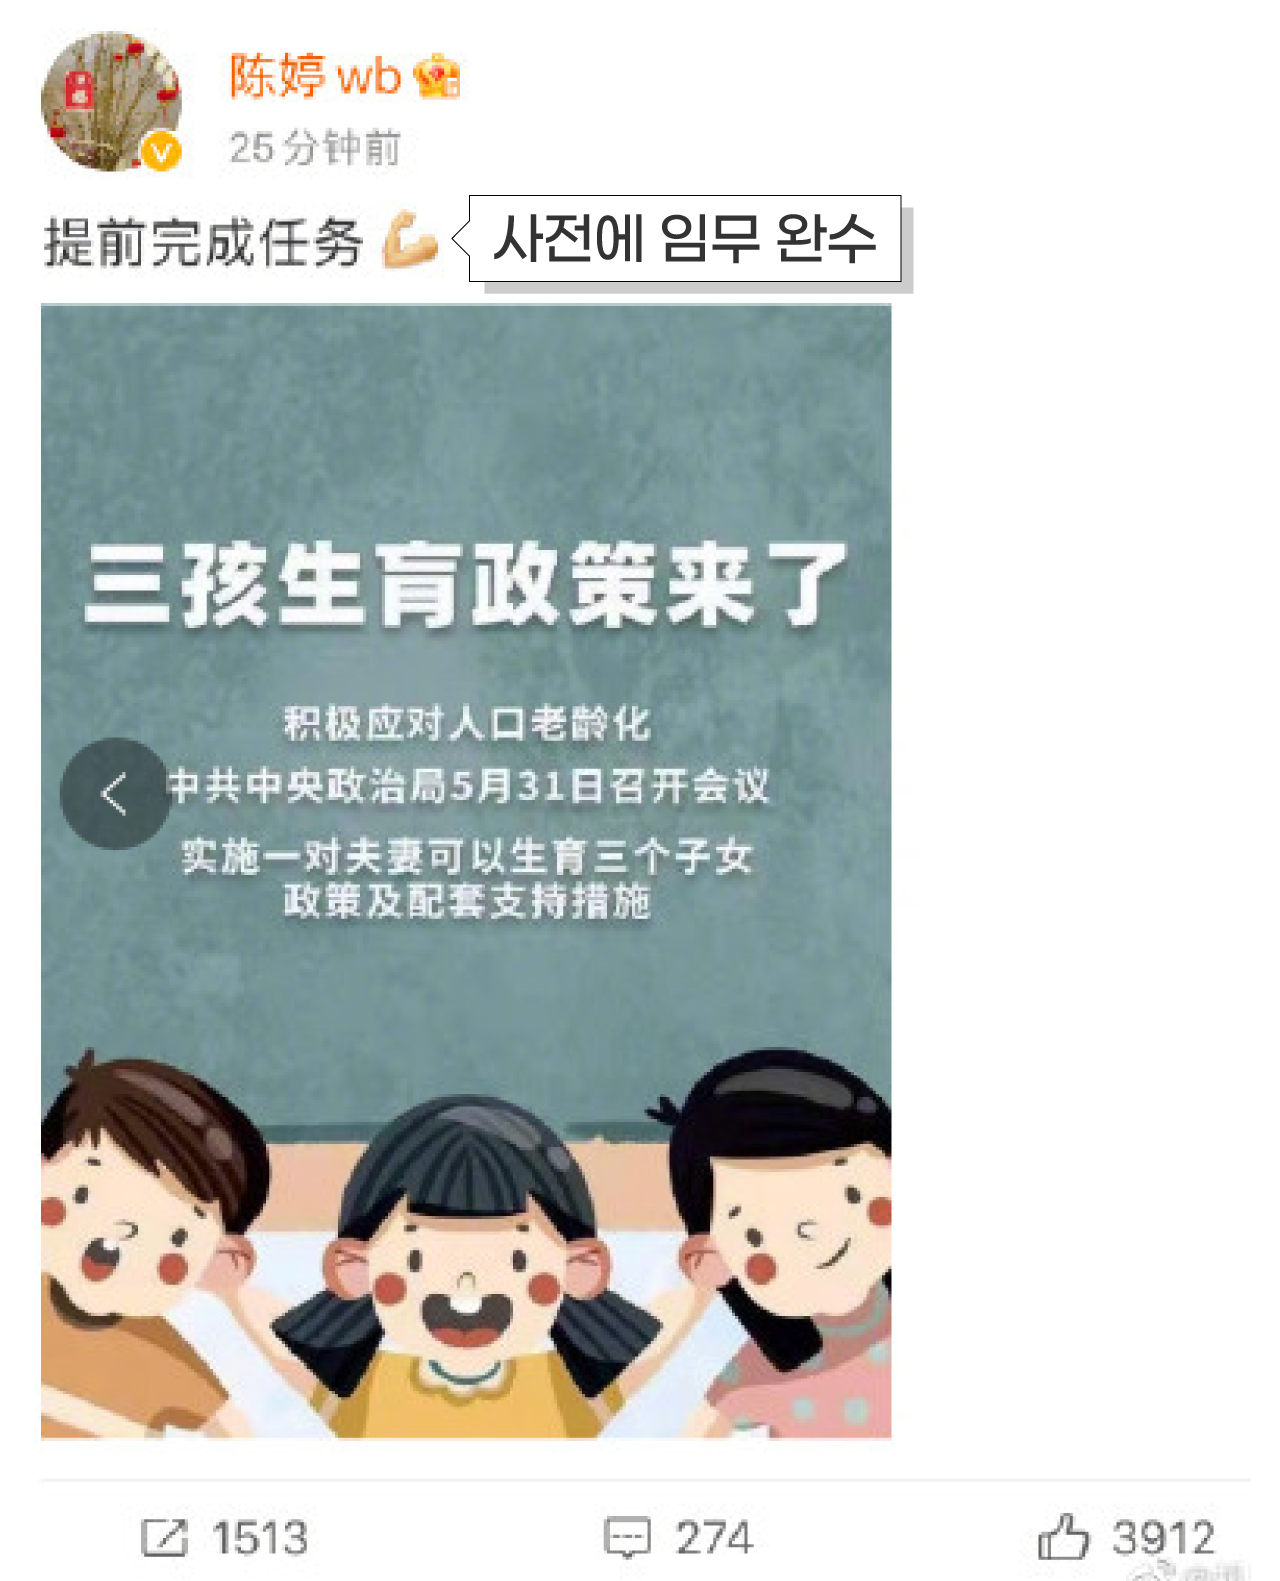 중국 공산당이 ‘세자녀 허용’ 결정을 하자,  장이머우 감독과 사이에 세자녀를 낳았다가 수난을 겪었던 부인 천팅이 자신의 웨이보에 공산당 발표 내용과 함께 “사전에 임무 완수”라는 글을 올렸다.